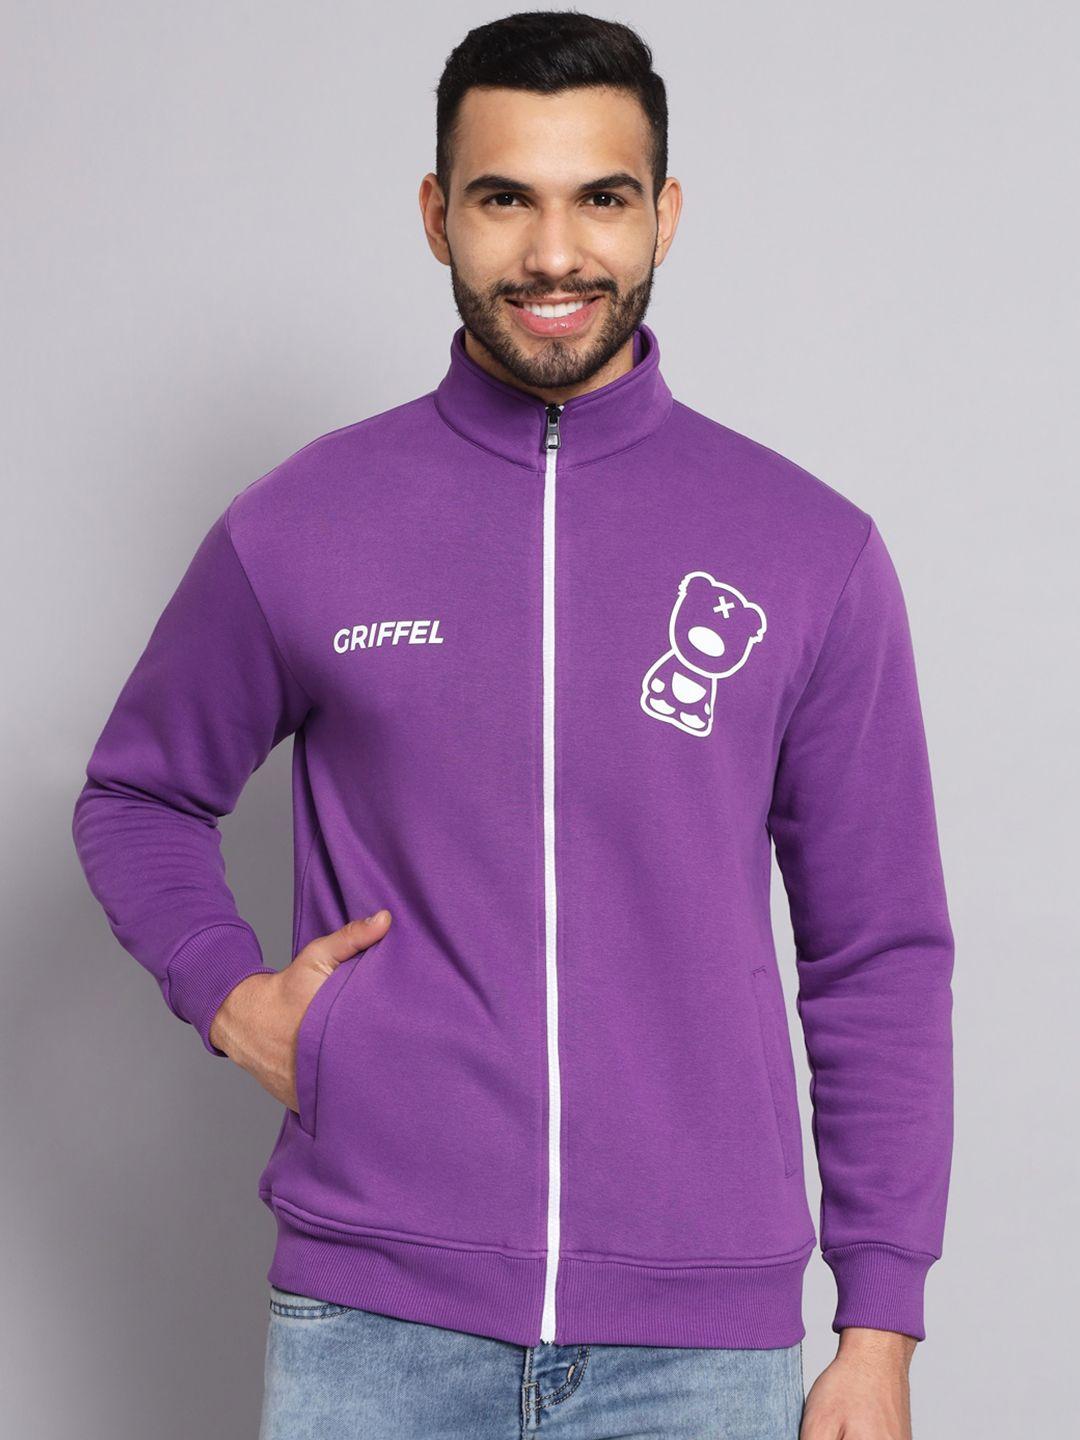 griffel-men-purple-printed-sweatshirt